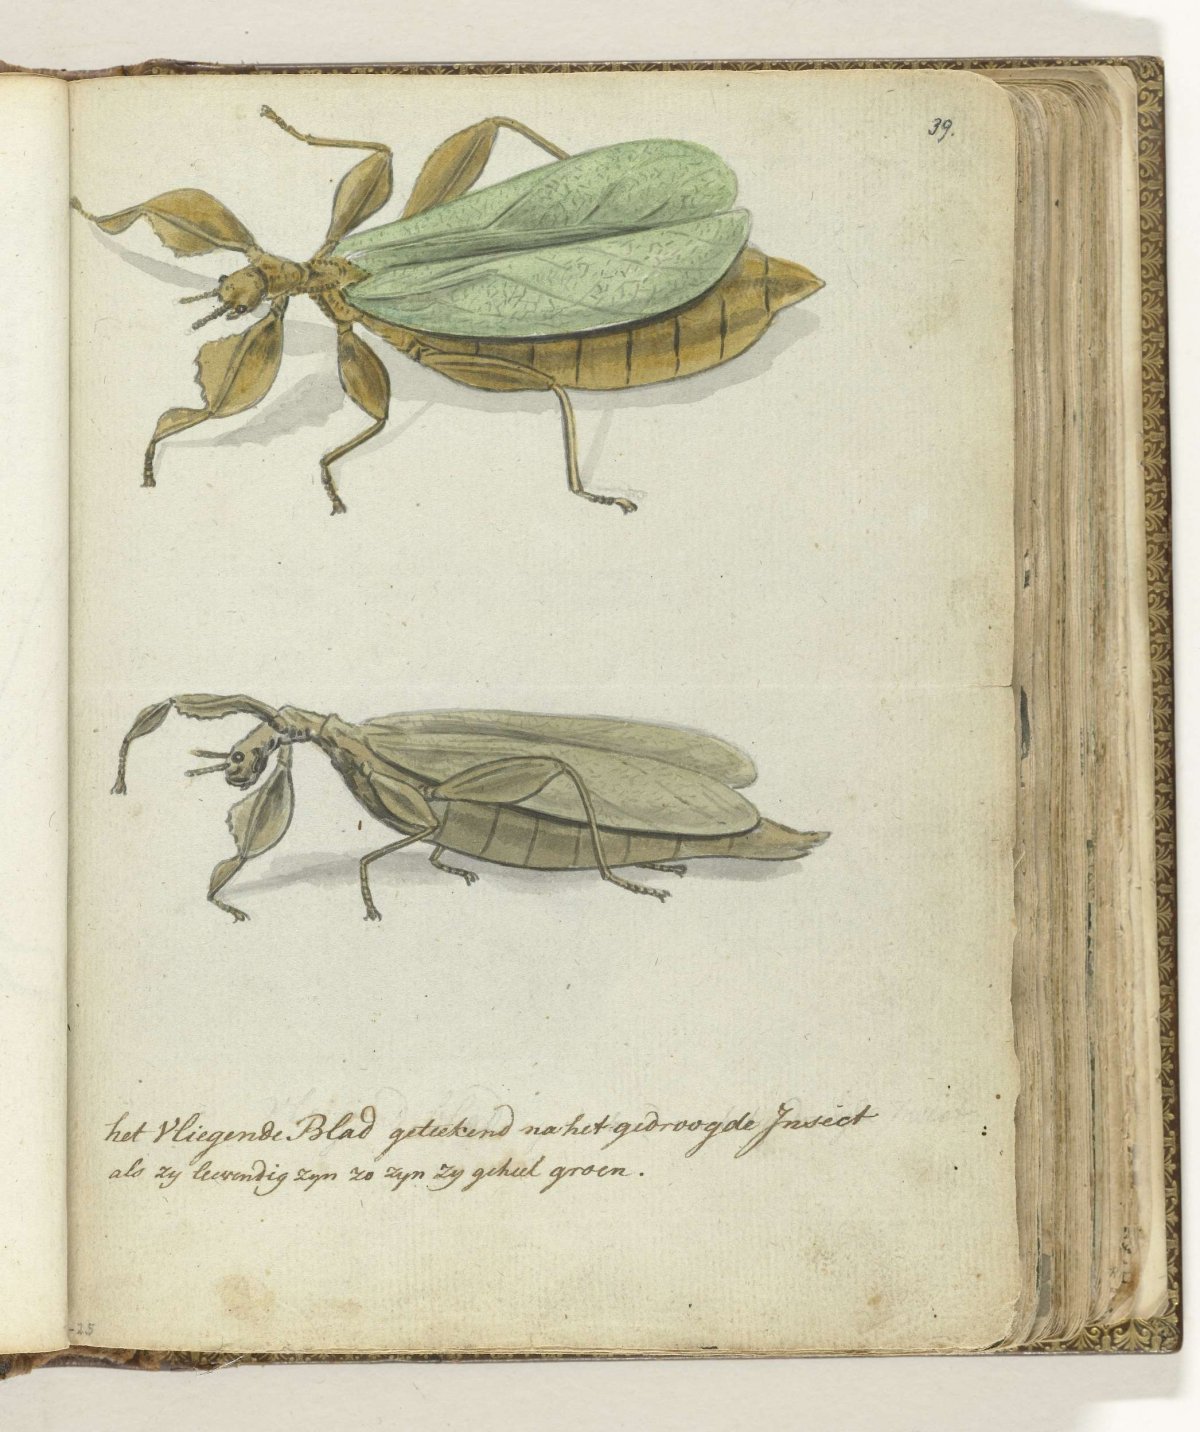 The Flying Leaf, Jan Brandes, 1778 - 1785